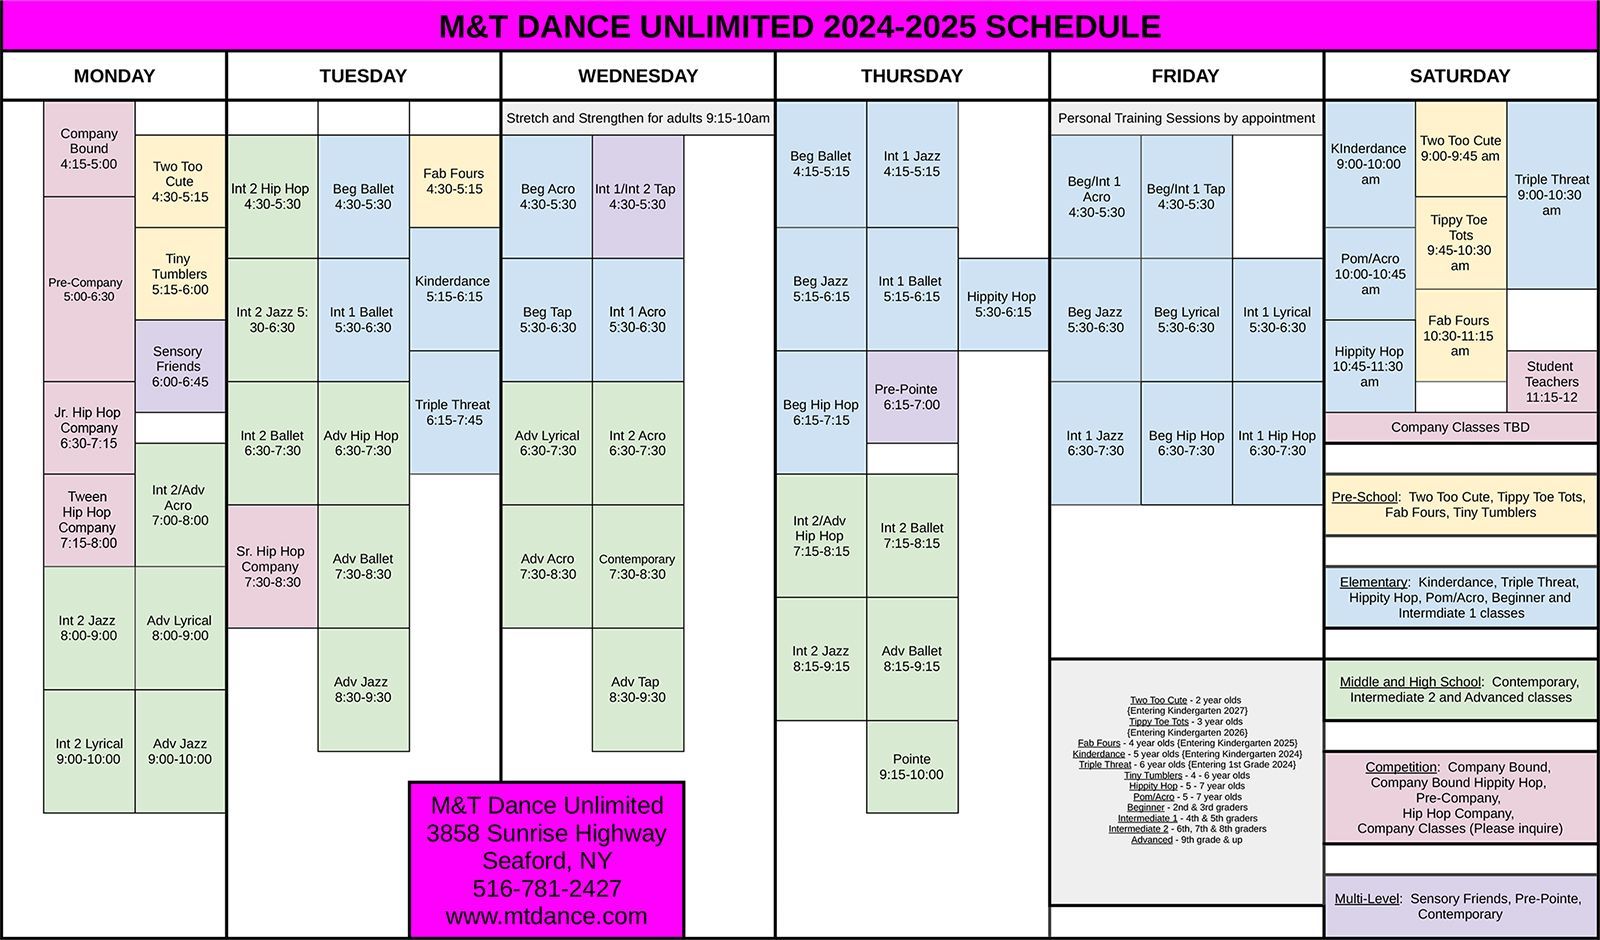 M&T Dance Unlimited 2024 Fall Schedule